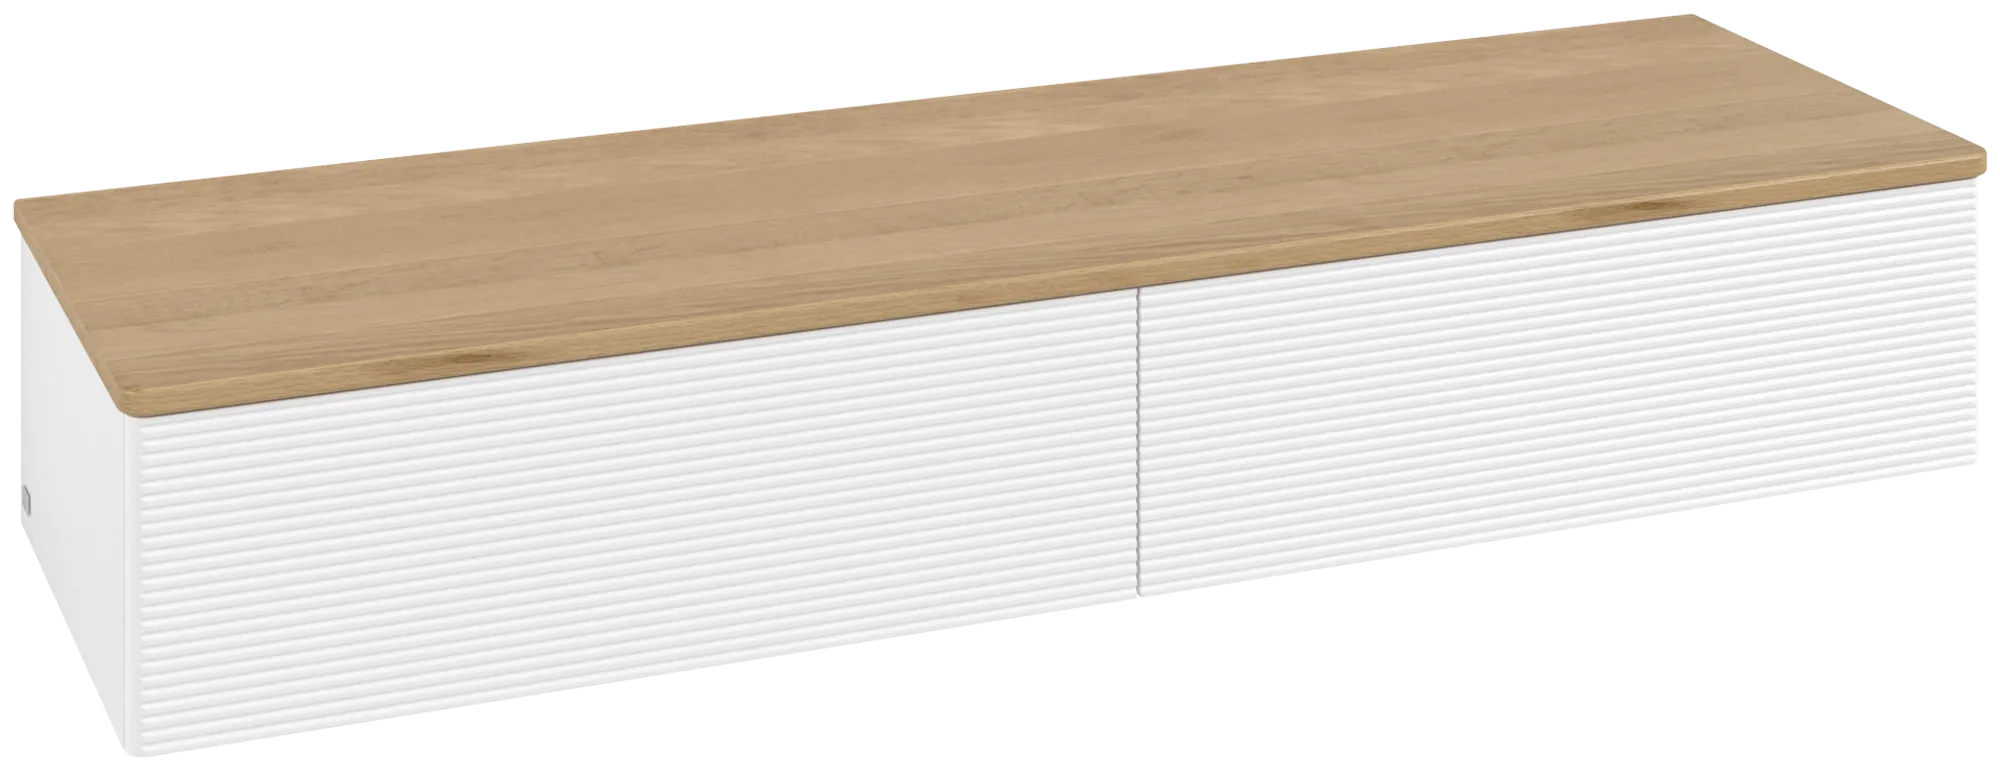 Bild von VILLEROY BOCH Antao Sideboard, 2 Auszüge, 1600 x 268 x 500 mm, Front mit Struktur, White Matt Lacquer / Honey Oak #K42101MT